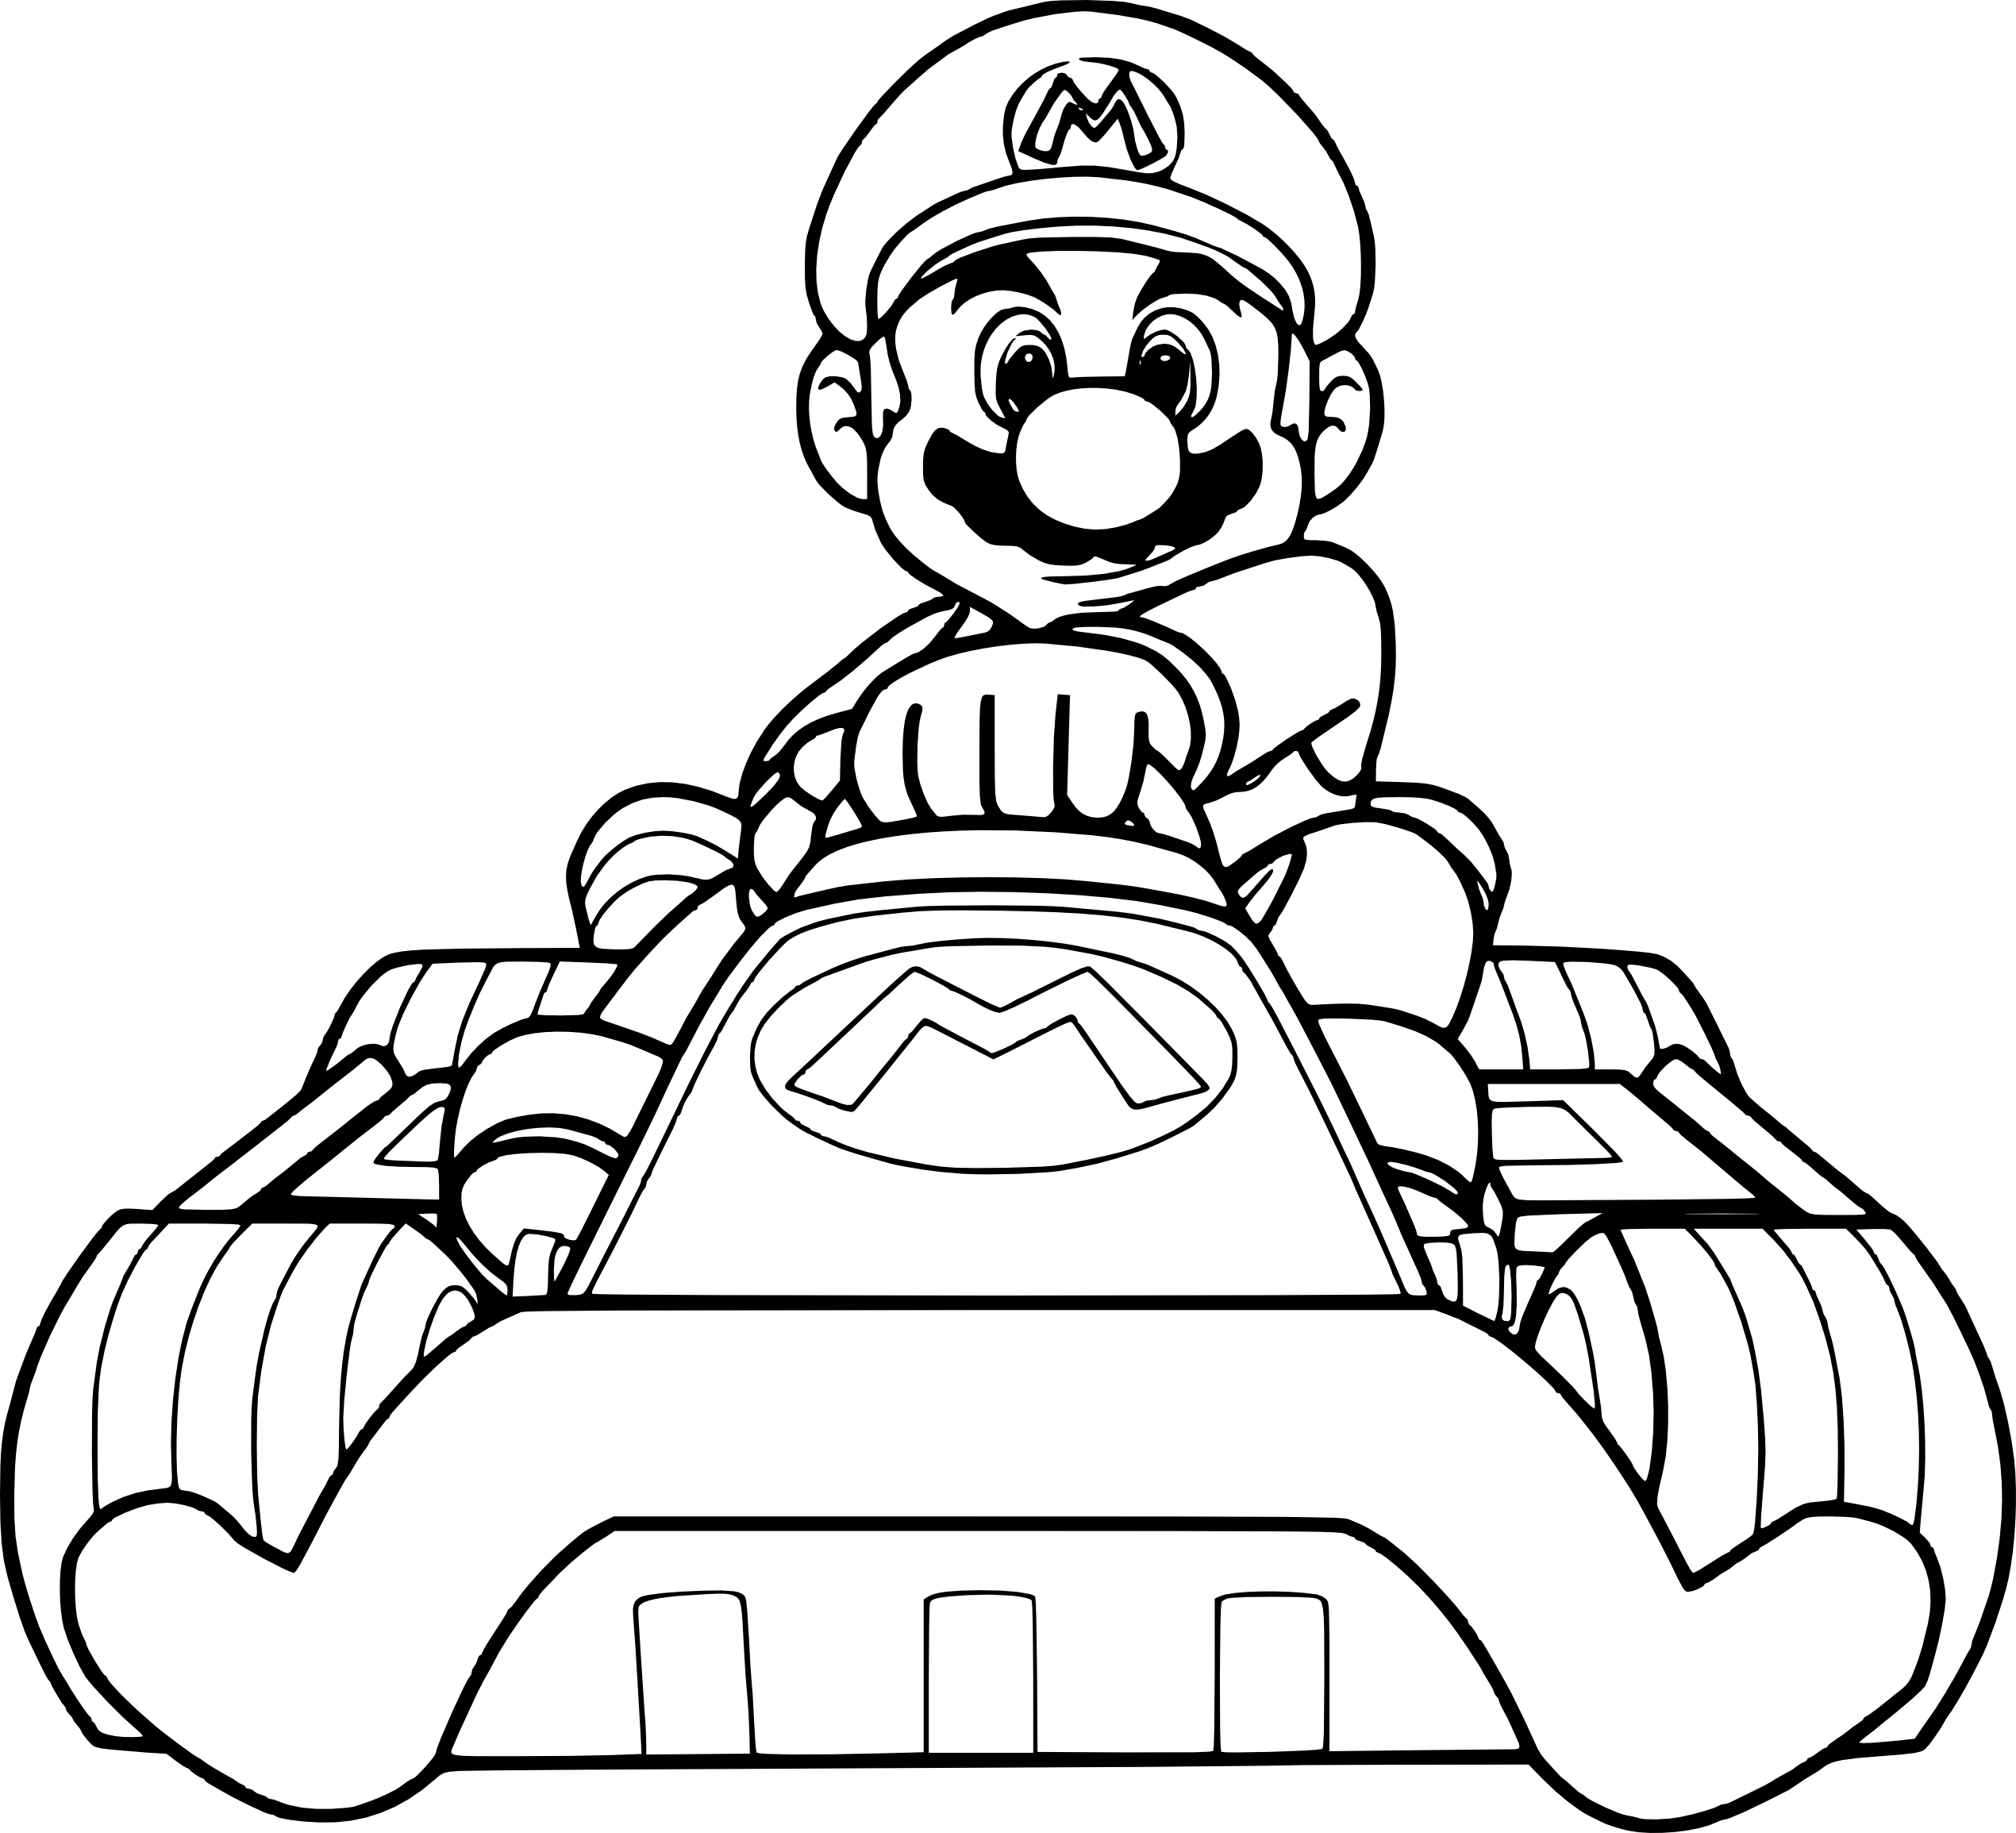 Coloriage Mario Kart A Imprimer